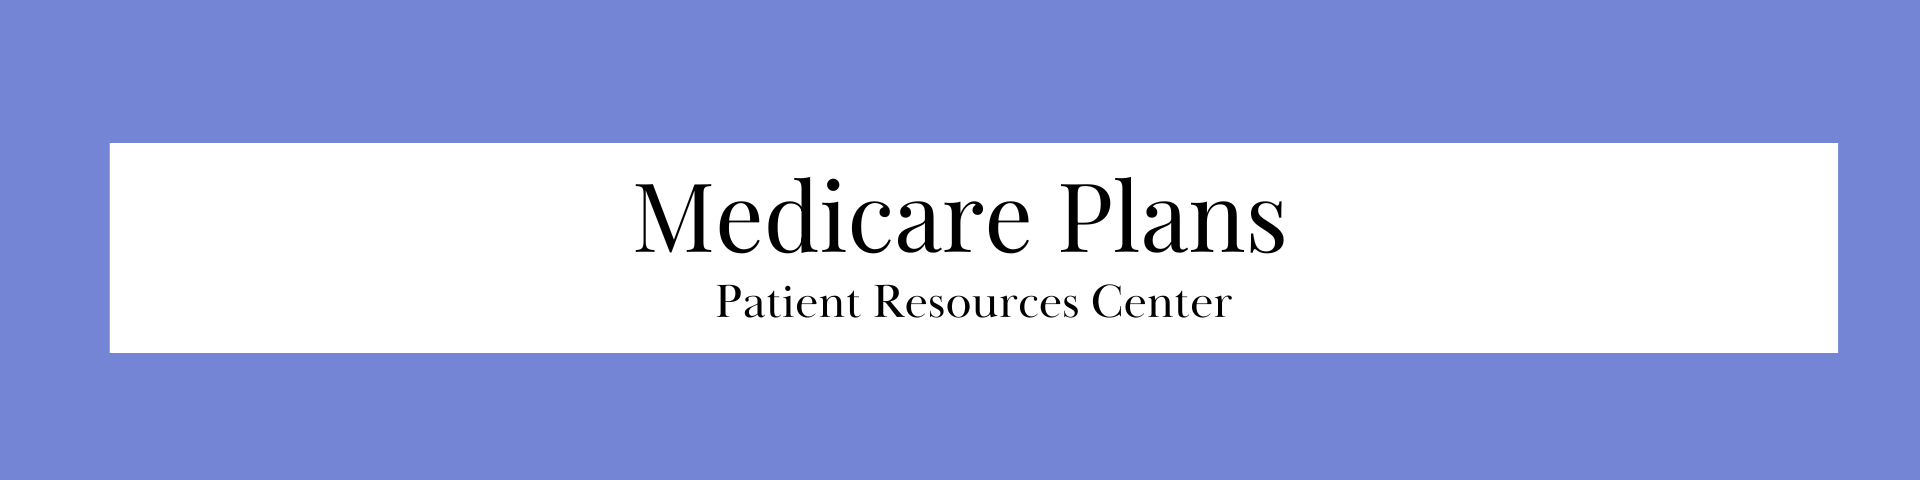 Medicare Plans Patient Resource Centers (link)